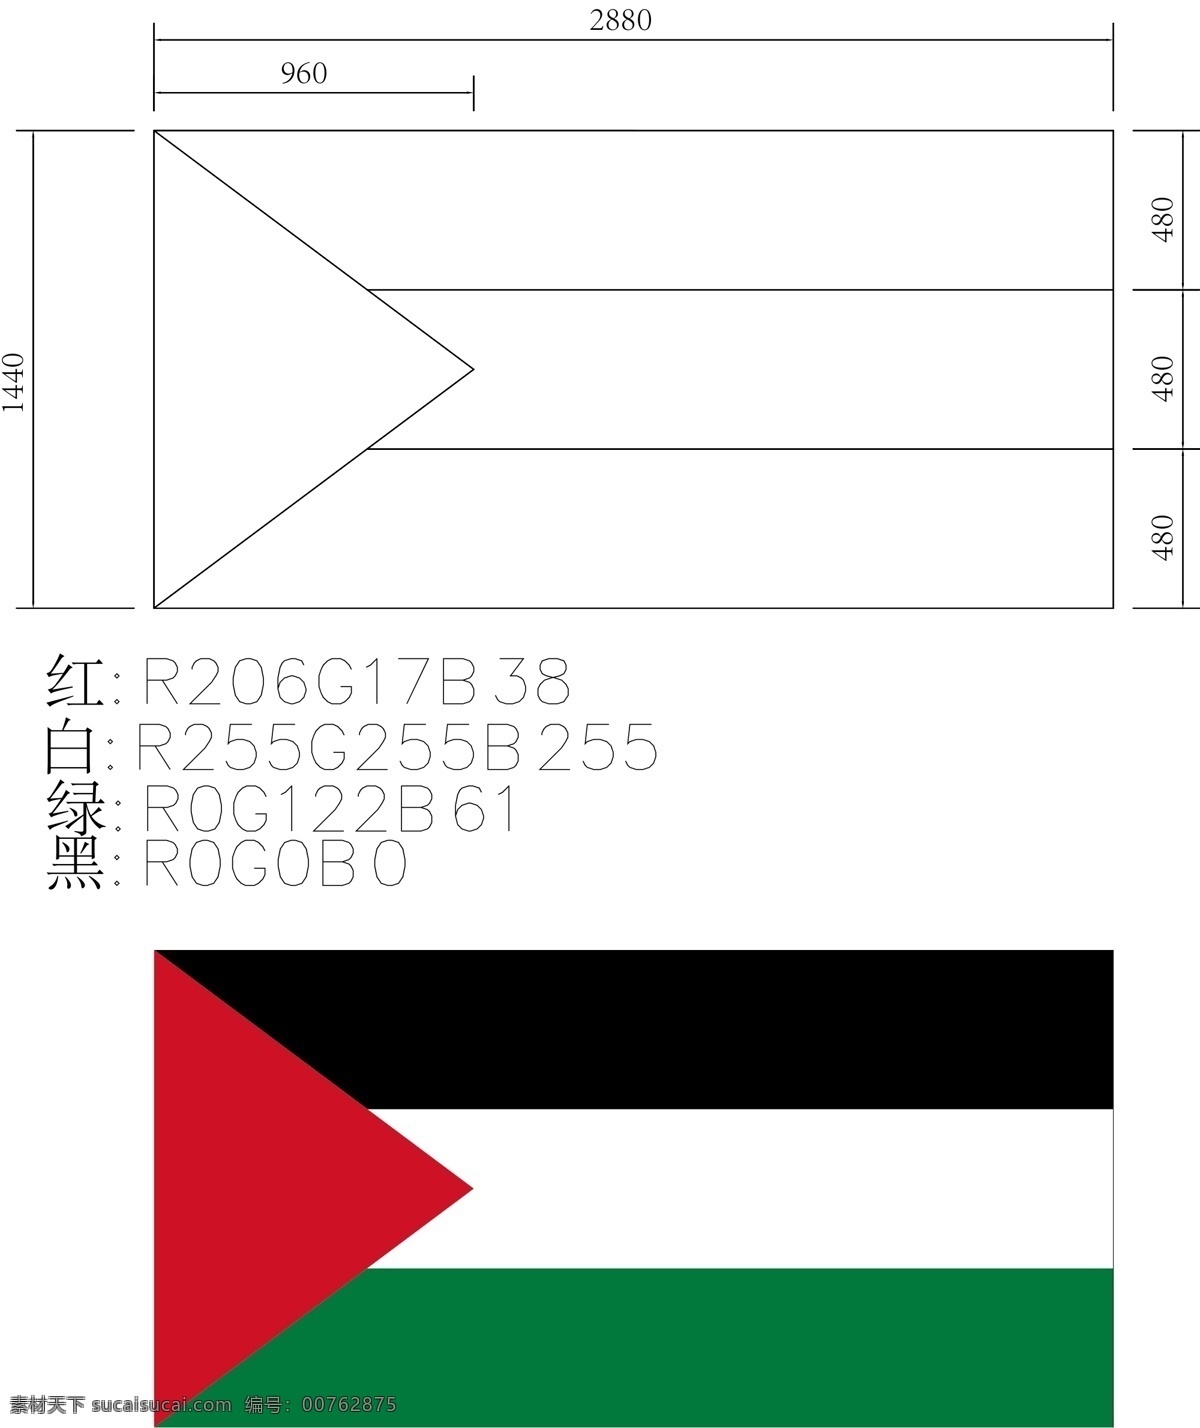 巴勒斯坦国旗 巴勒斯坦 国旗 红色 黑色 白色 绿色 旗帜 生活百科